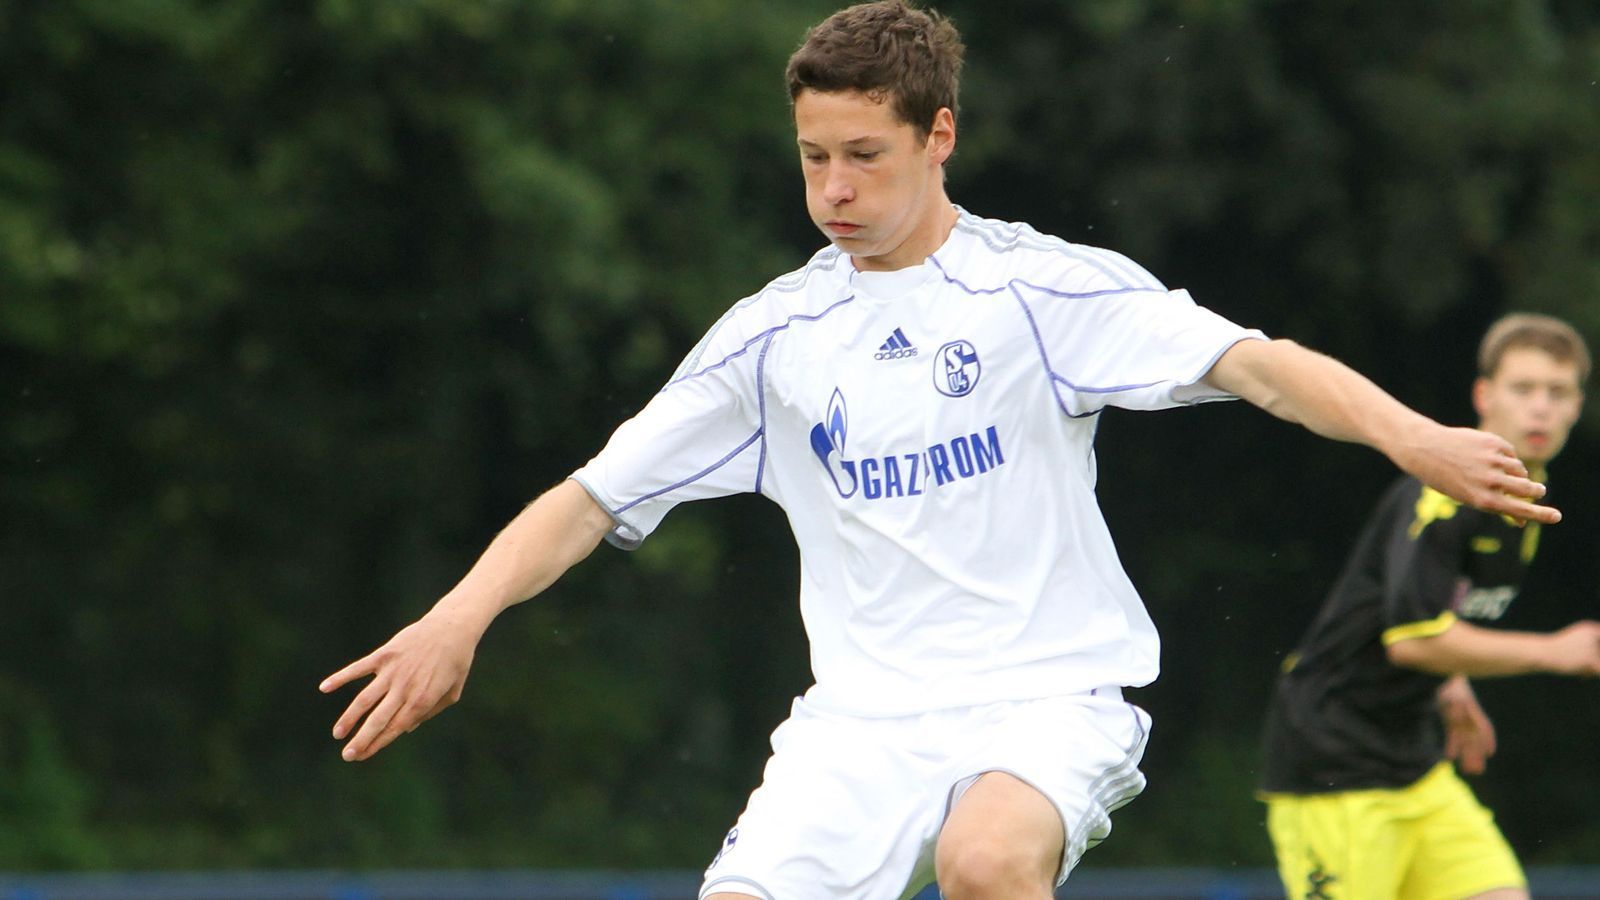 
                <strong>Julian Draxler</strong><br>
                Julian Draxler kickte 2010 noch für seinen Jugendverein Schalke 04. Mit 17 Jahren stand er damals schon kurz vor dem Durchbruch.
              